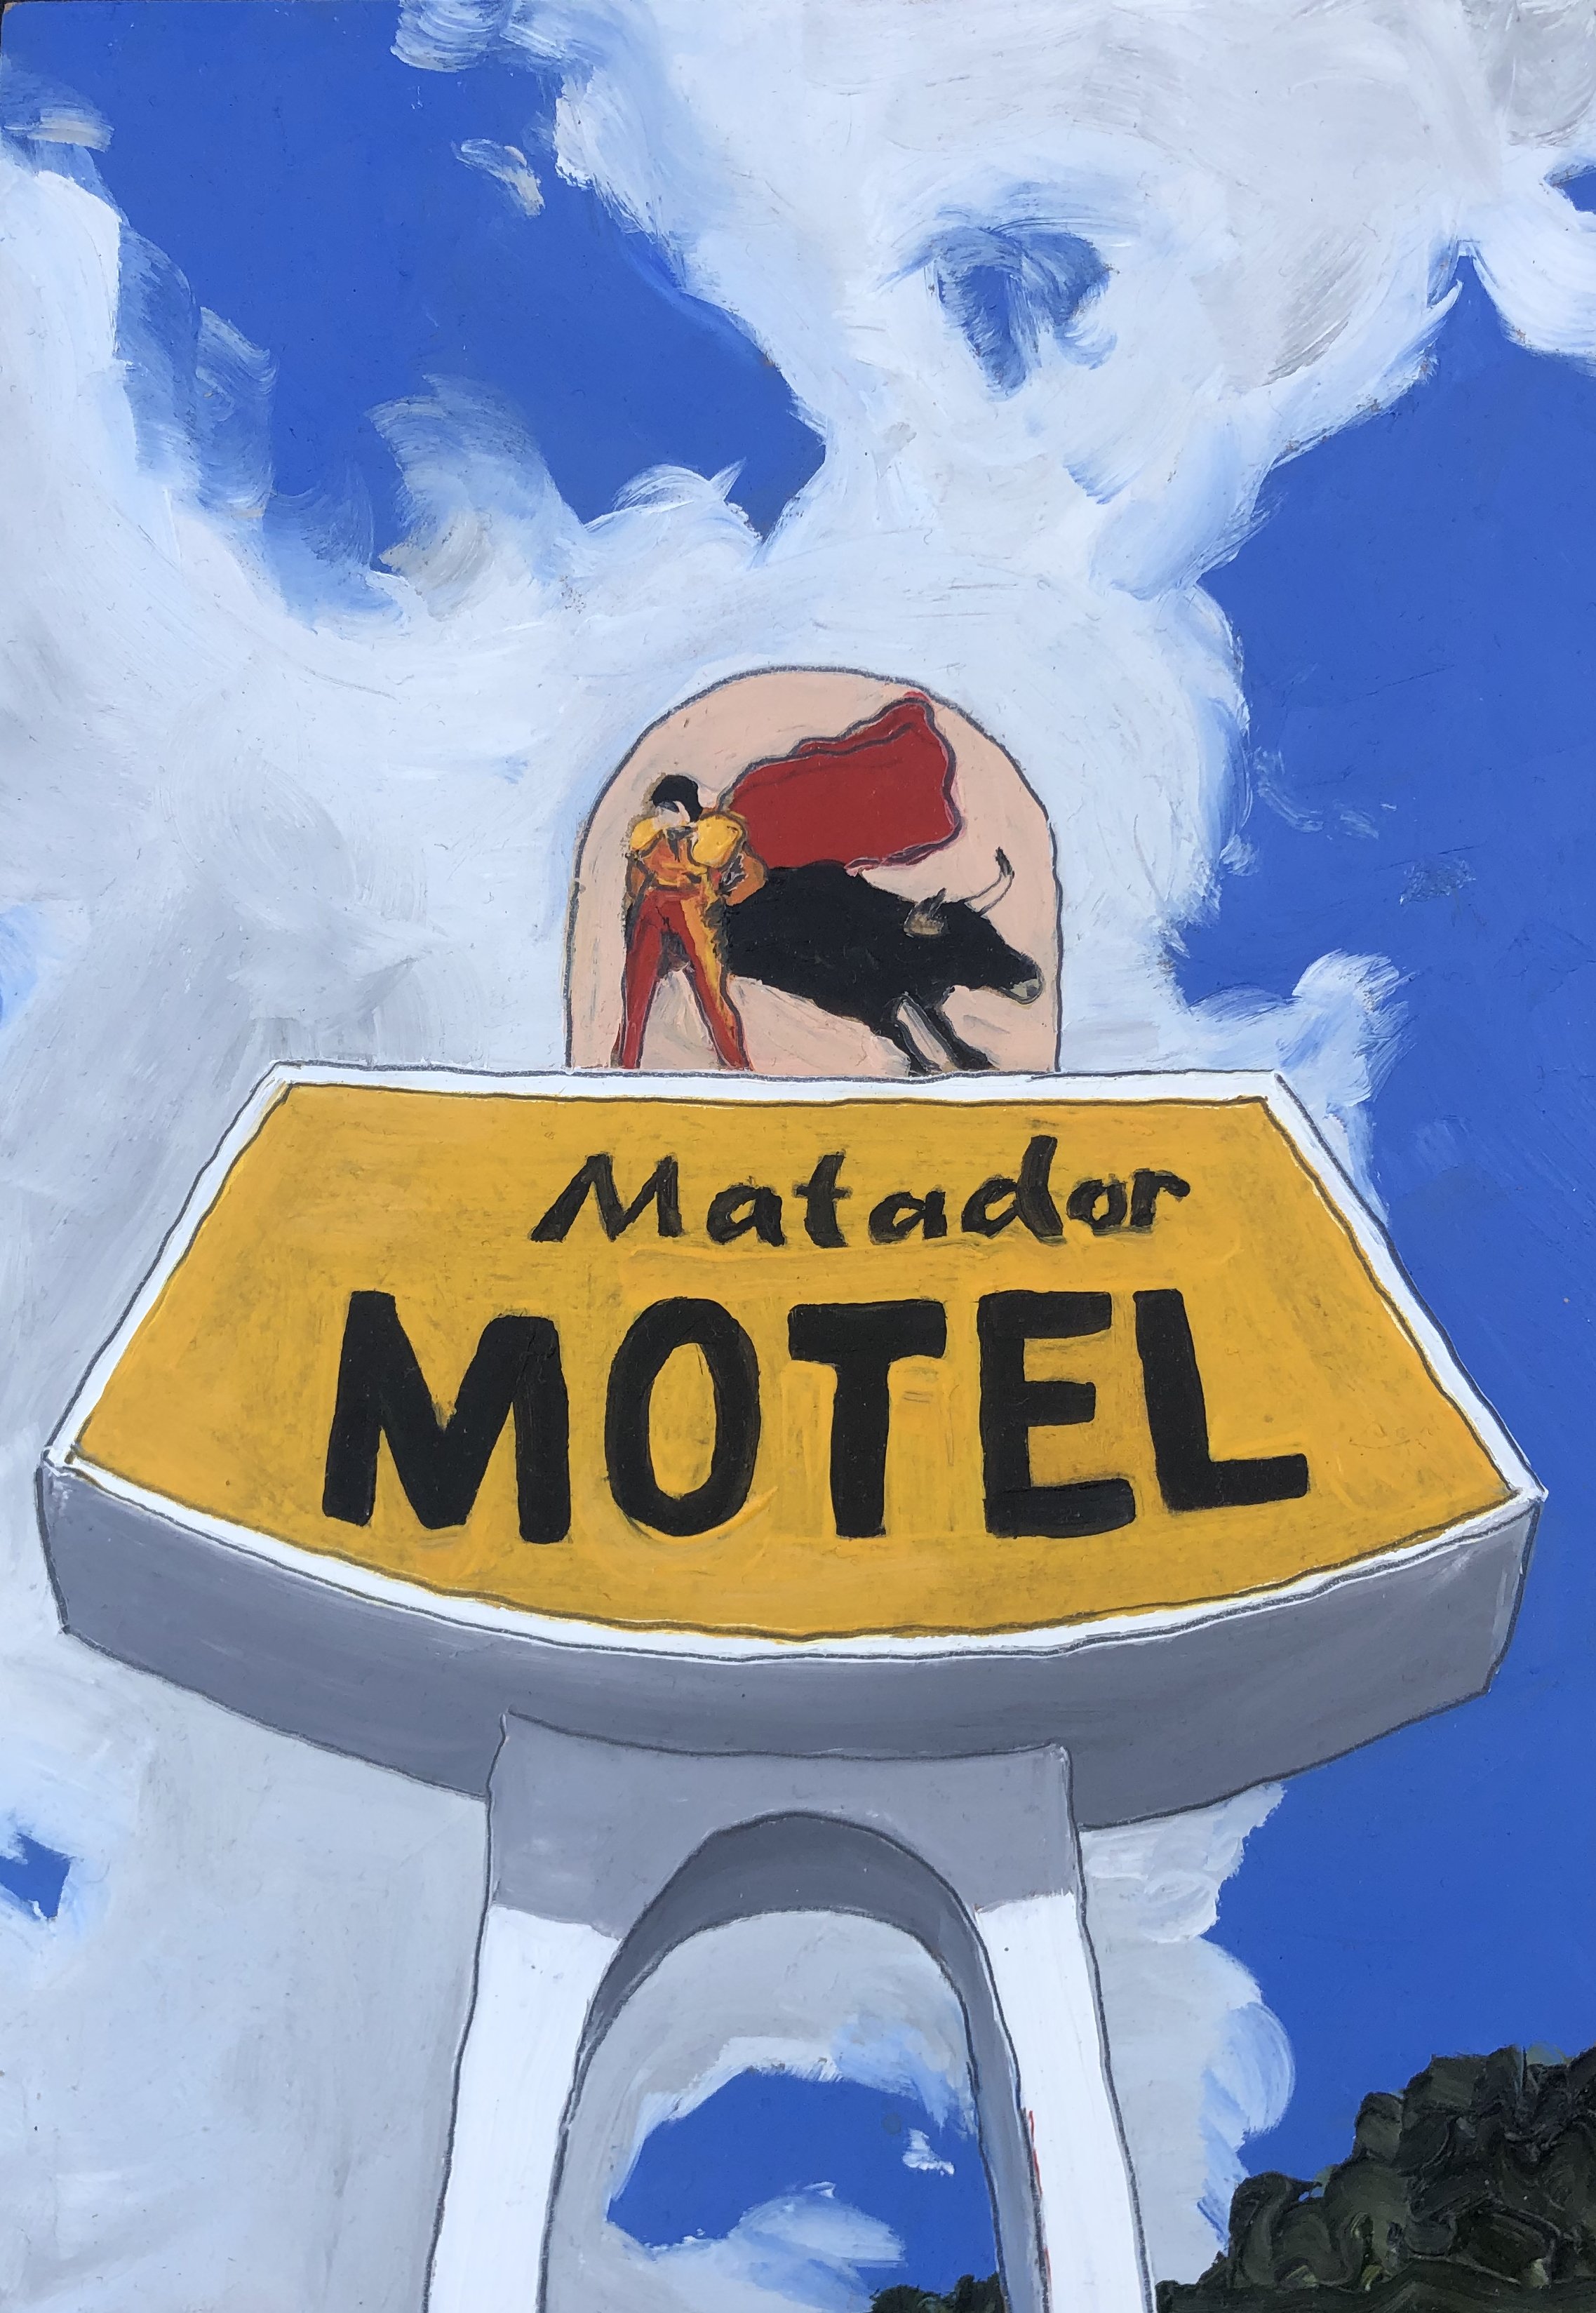 New Matador Motel.jpg